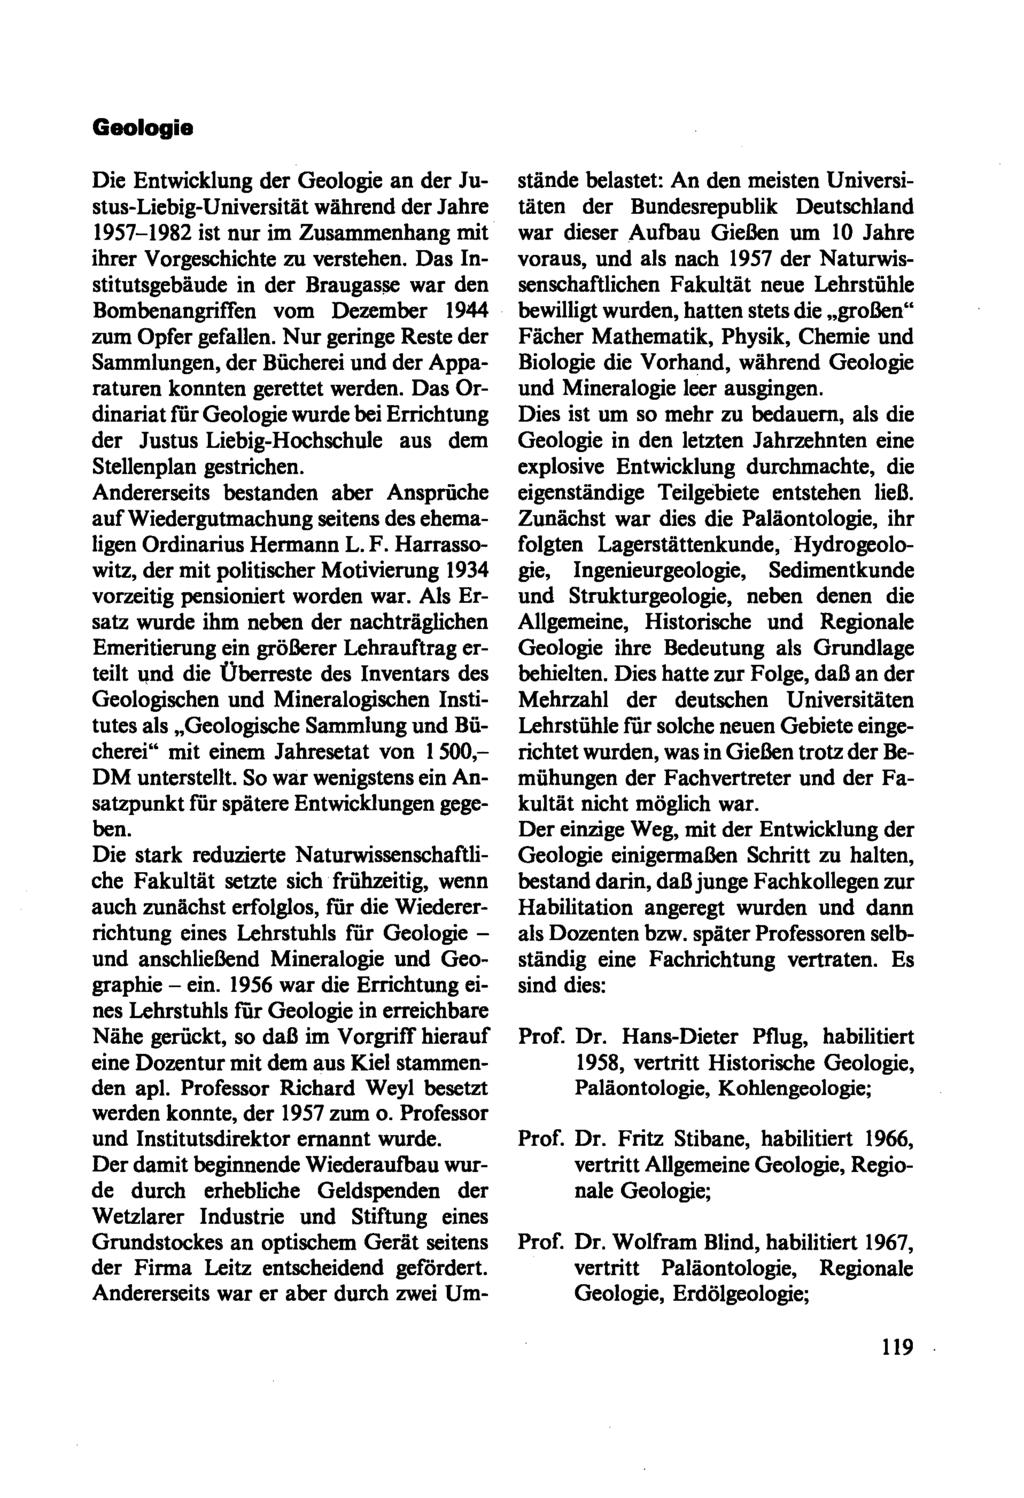 Geologie Die Entwicklung der Geologie an der Justus-Liebig-Universität während der Jahre 1957-1982 ist nur im Zusammenhang mit ihrer Vorgeschichte zu verstehen.